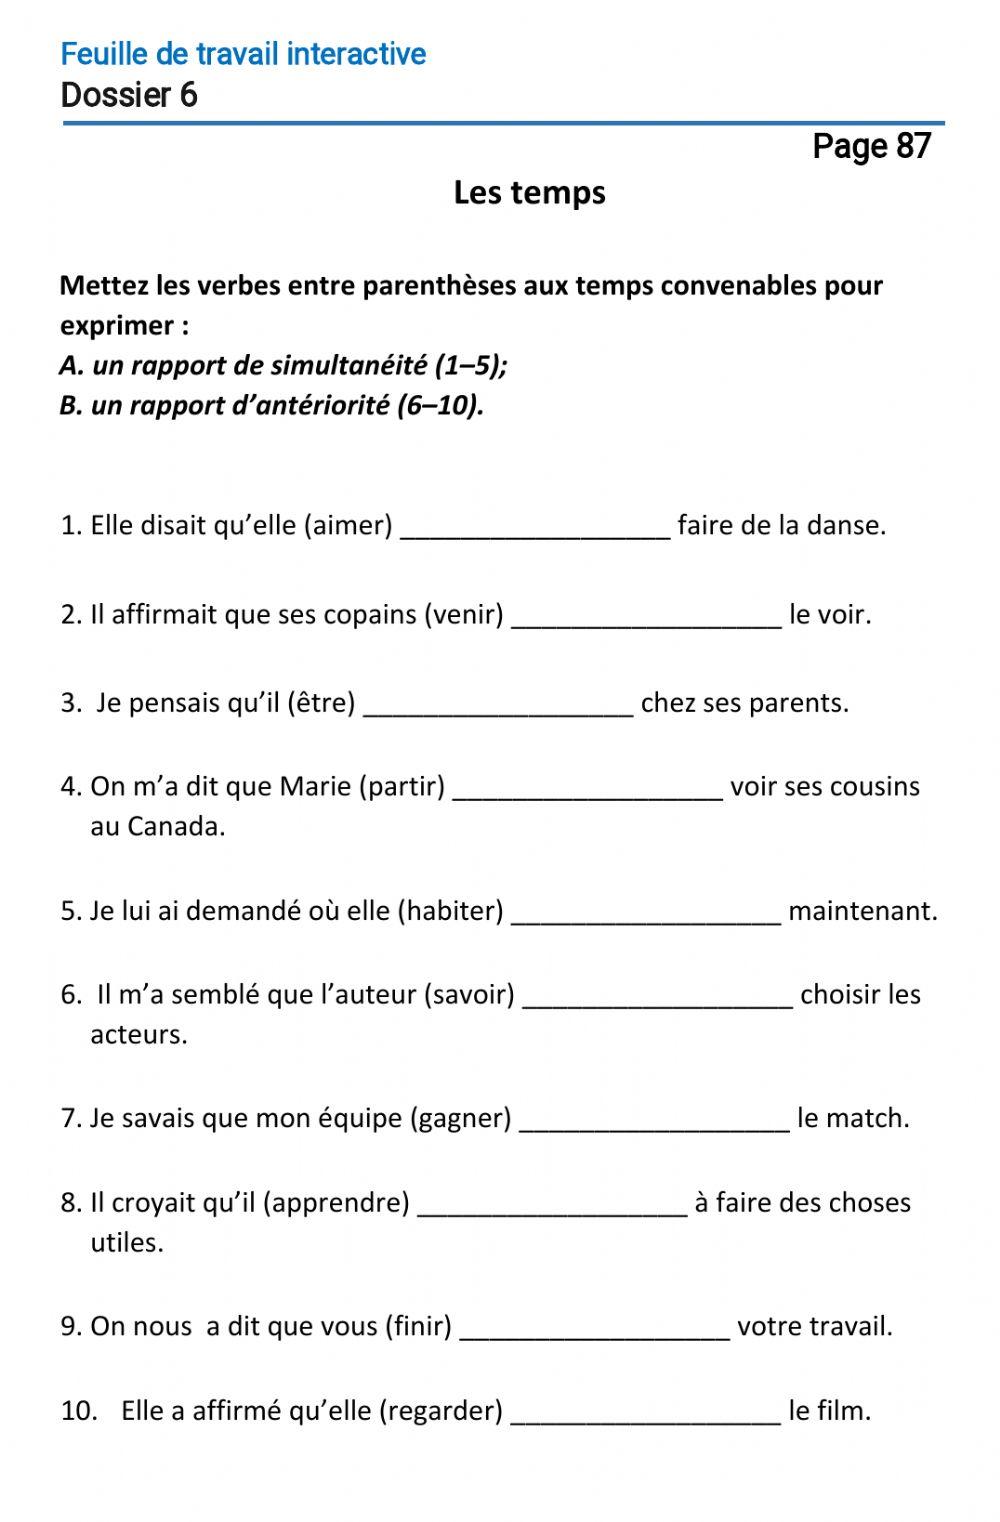 Le français-10 (повыш.)-Dossier 6-Page 87